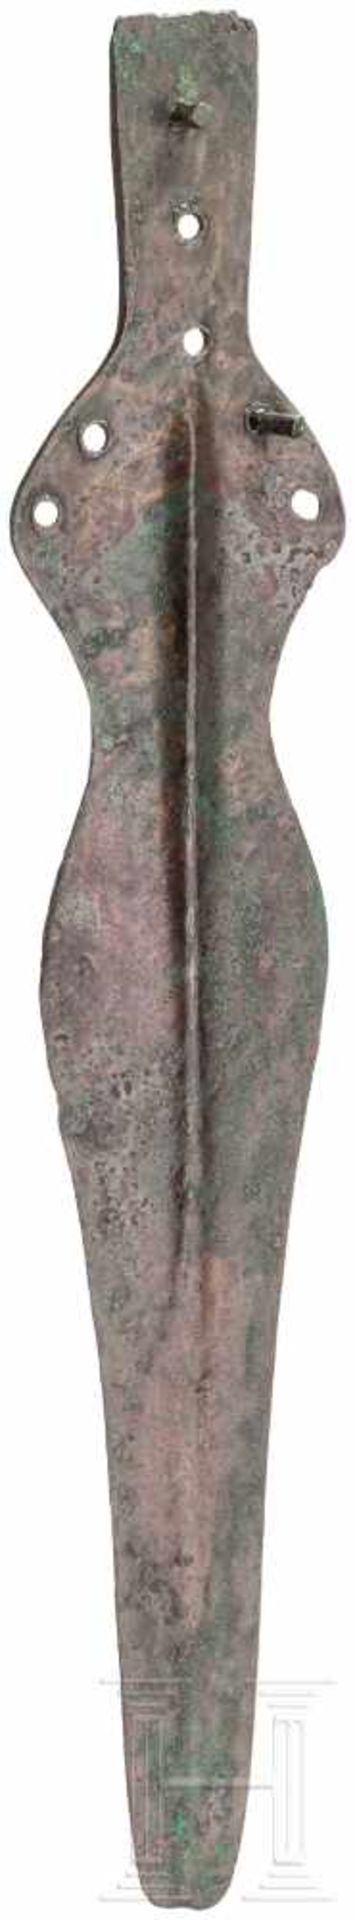 Griffzungendolch, Späte Bronzezeit, 12. - 10. Jhdt. v. Chr.Bronzener Griffzungendolch mit sieben